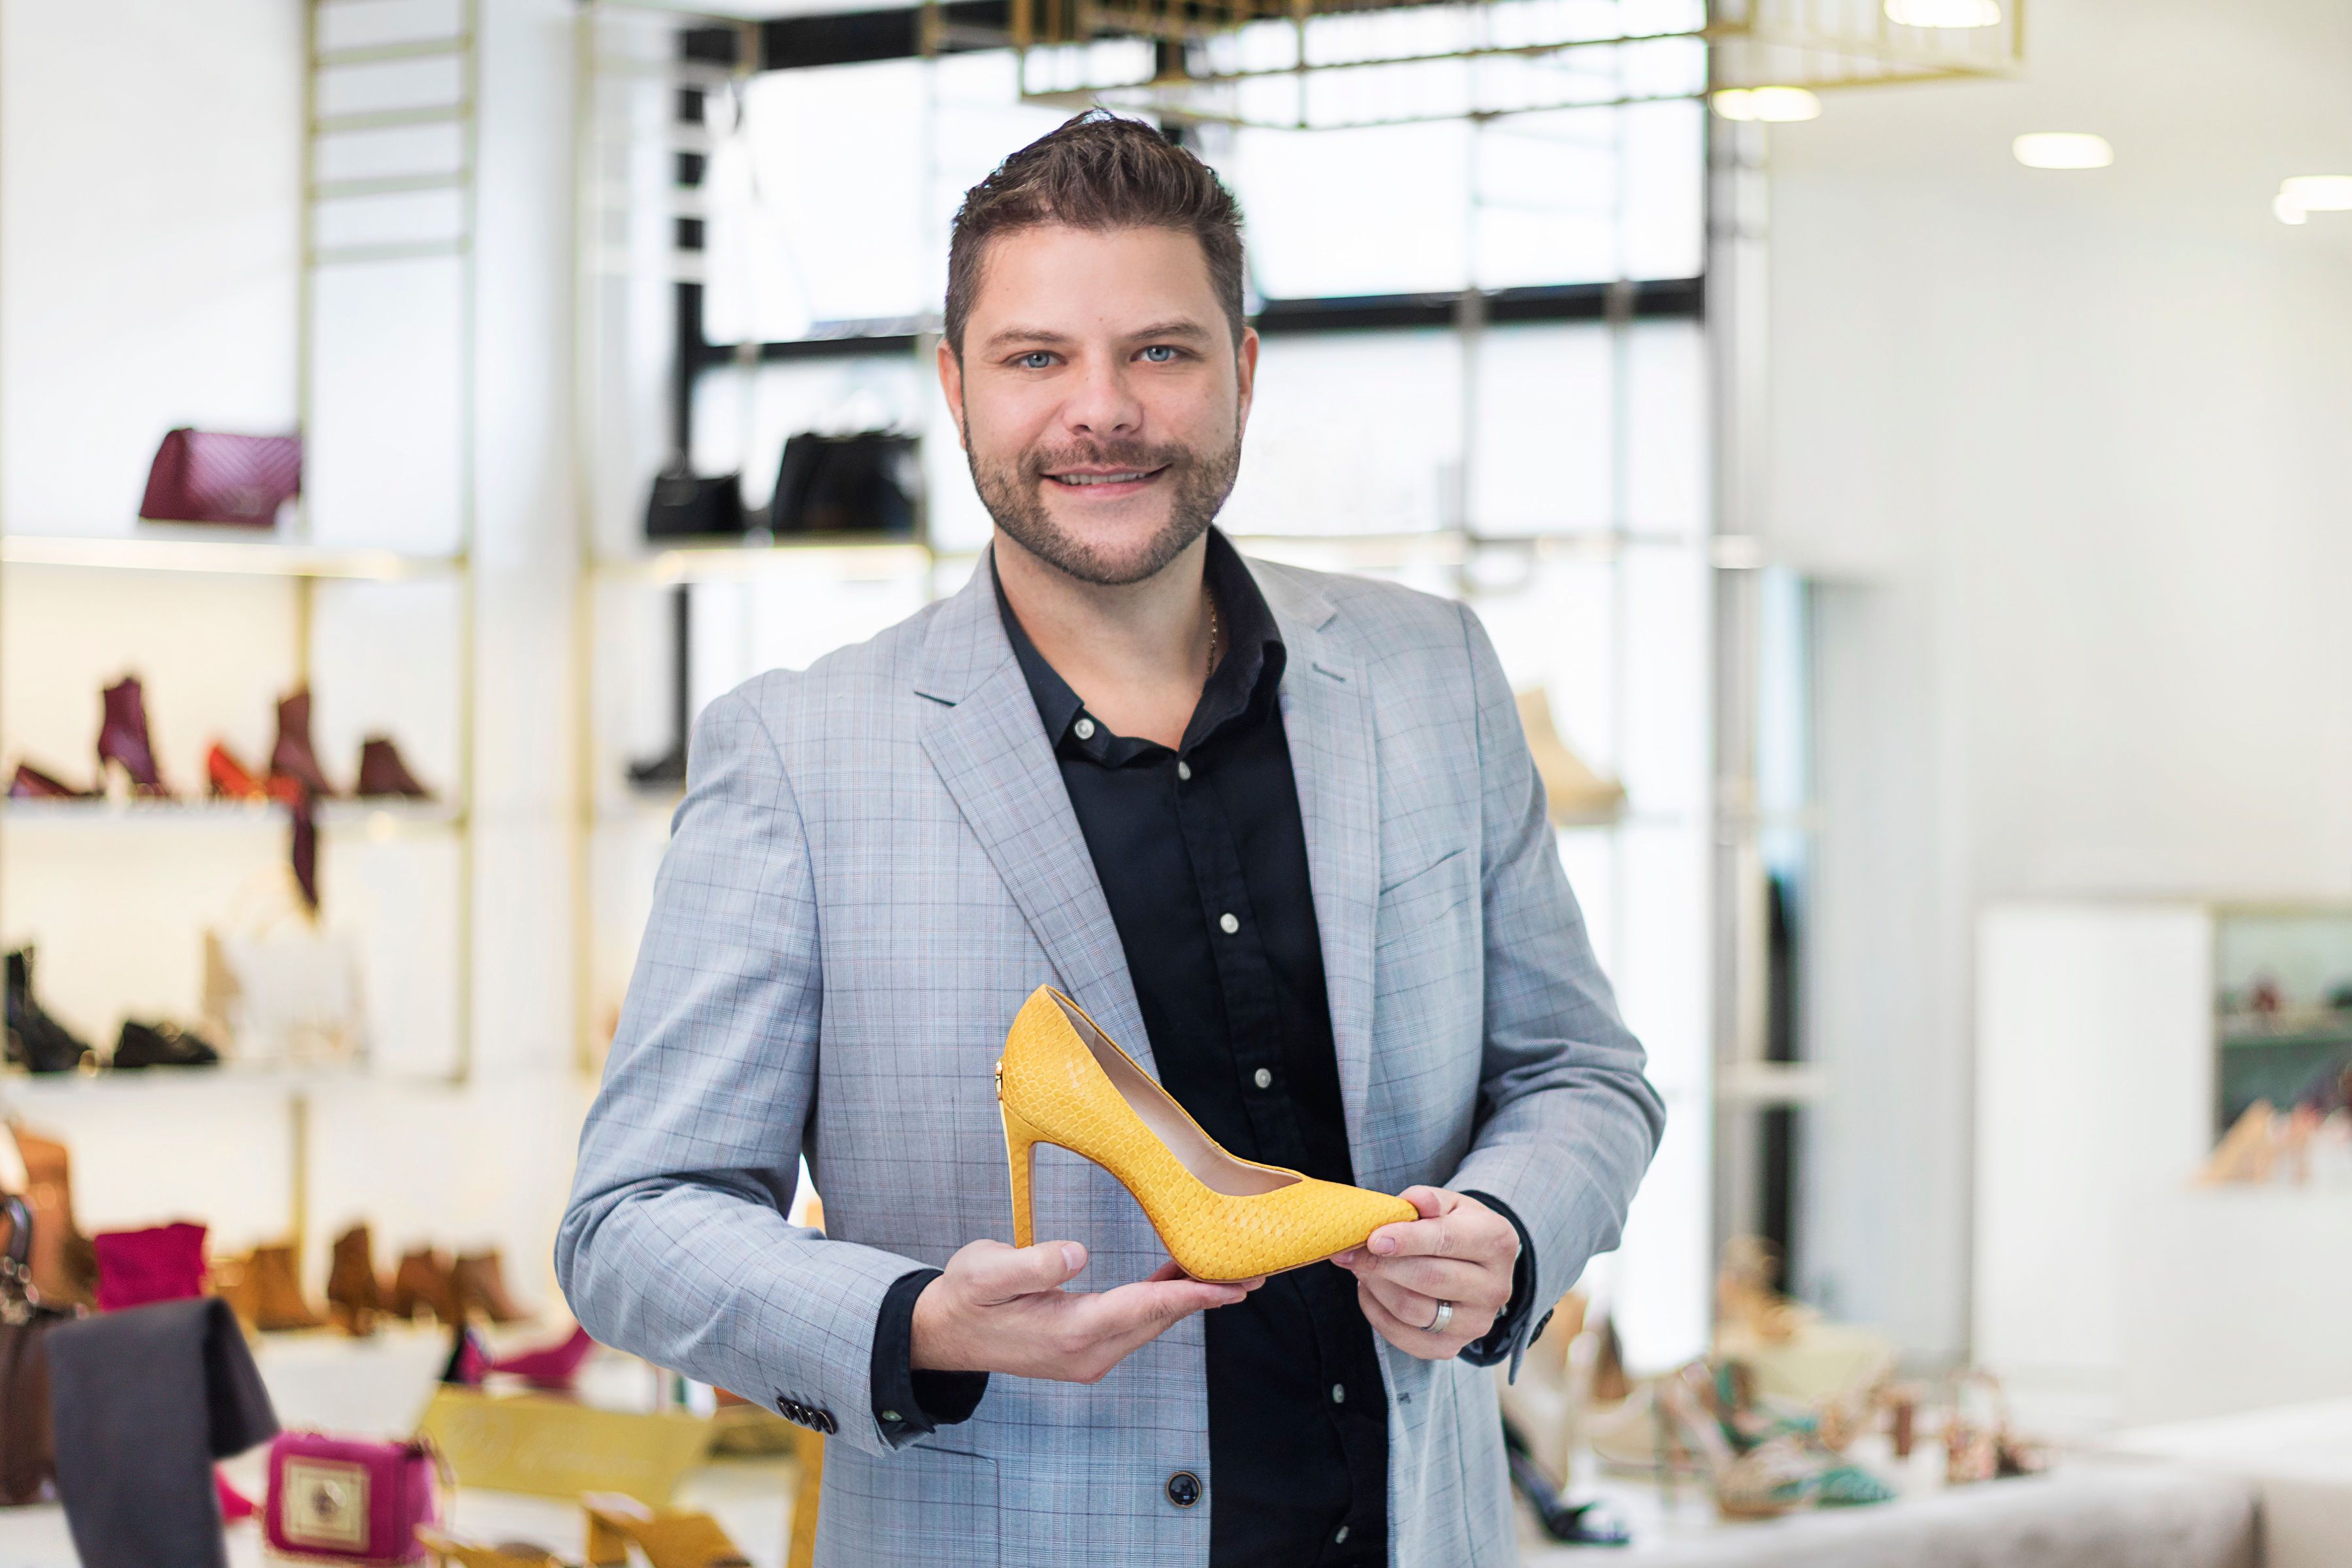 La marca exclusiva del diseñador Jorge Biscoff llega a Ecuador para ofrecer una propuesta de calzado, carteras y accesorios para mujer.